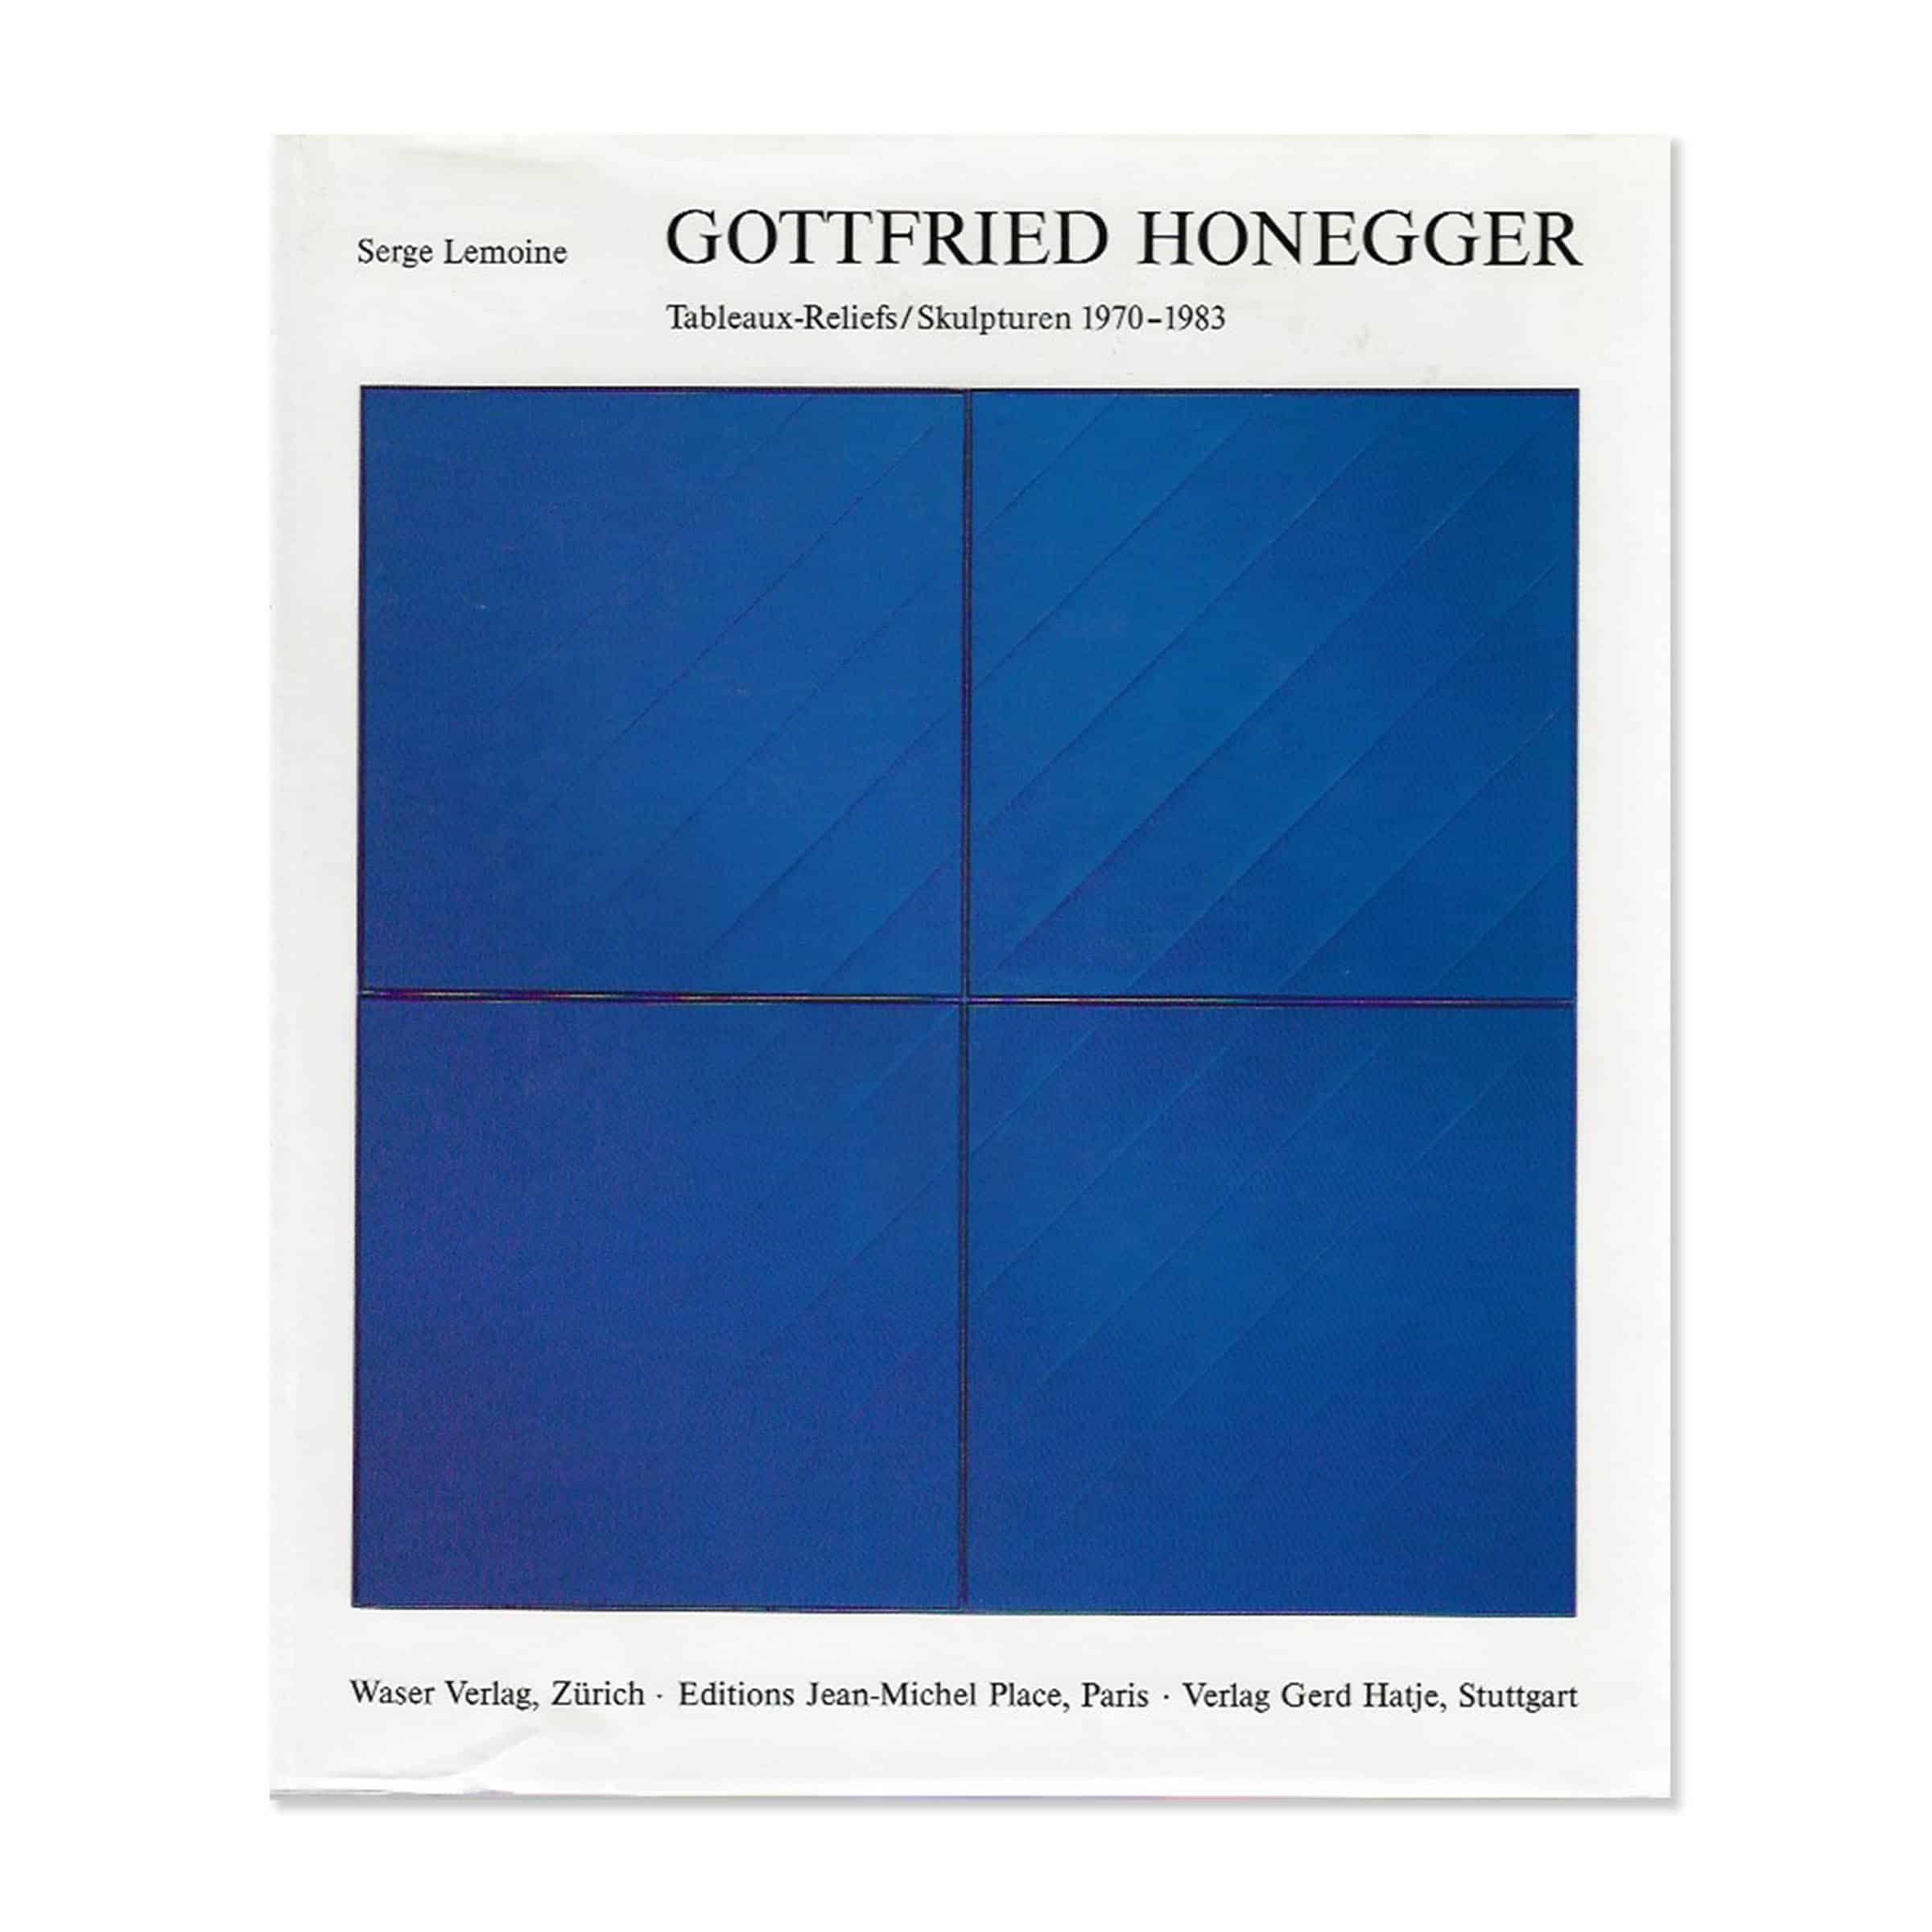 Gottfried Honegger. Cover view